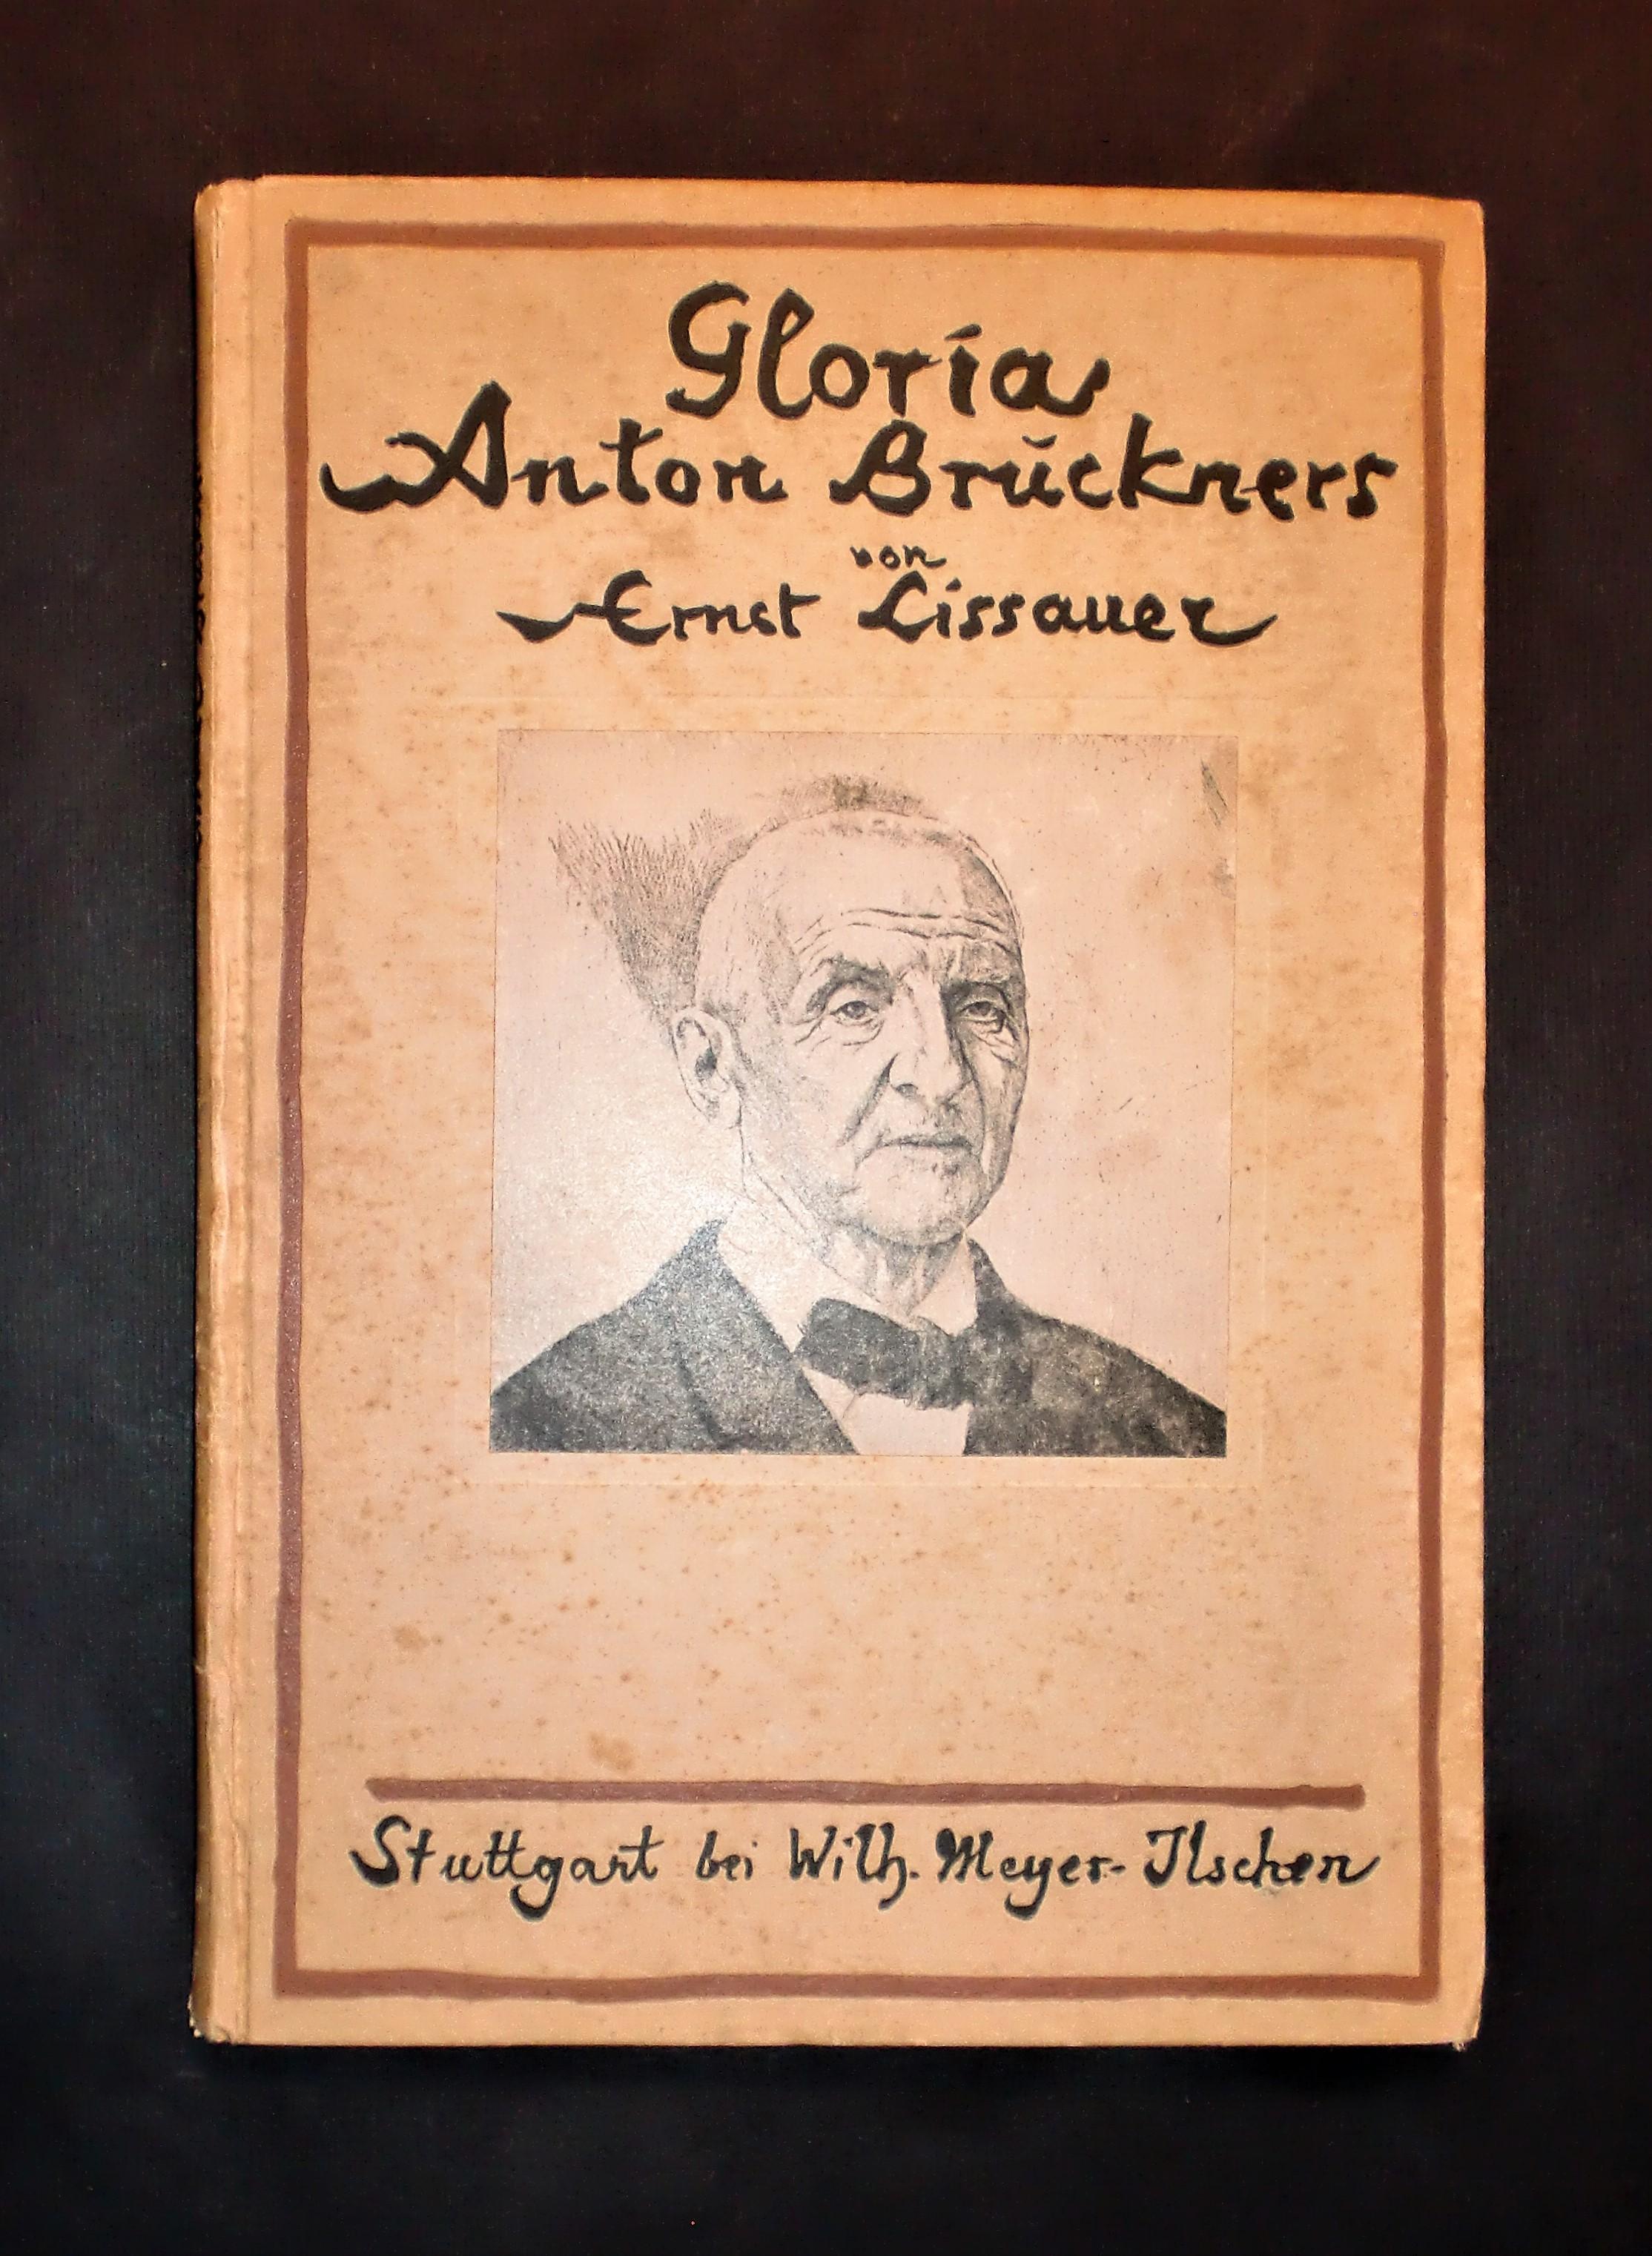 Poesia libri - Gloria Anton Bruckners - Verse und prosa von Ernst Lissauer  -1921: Buone Rilegato